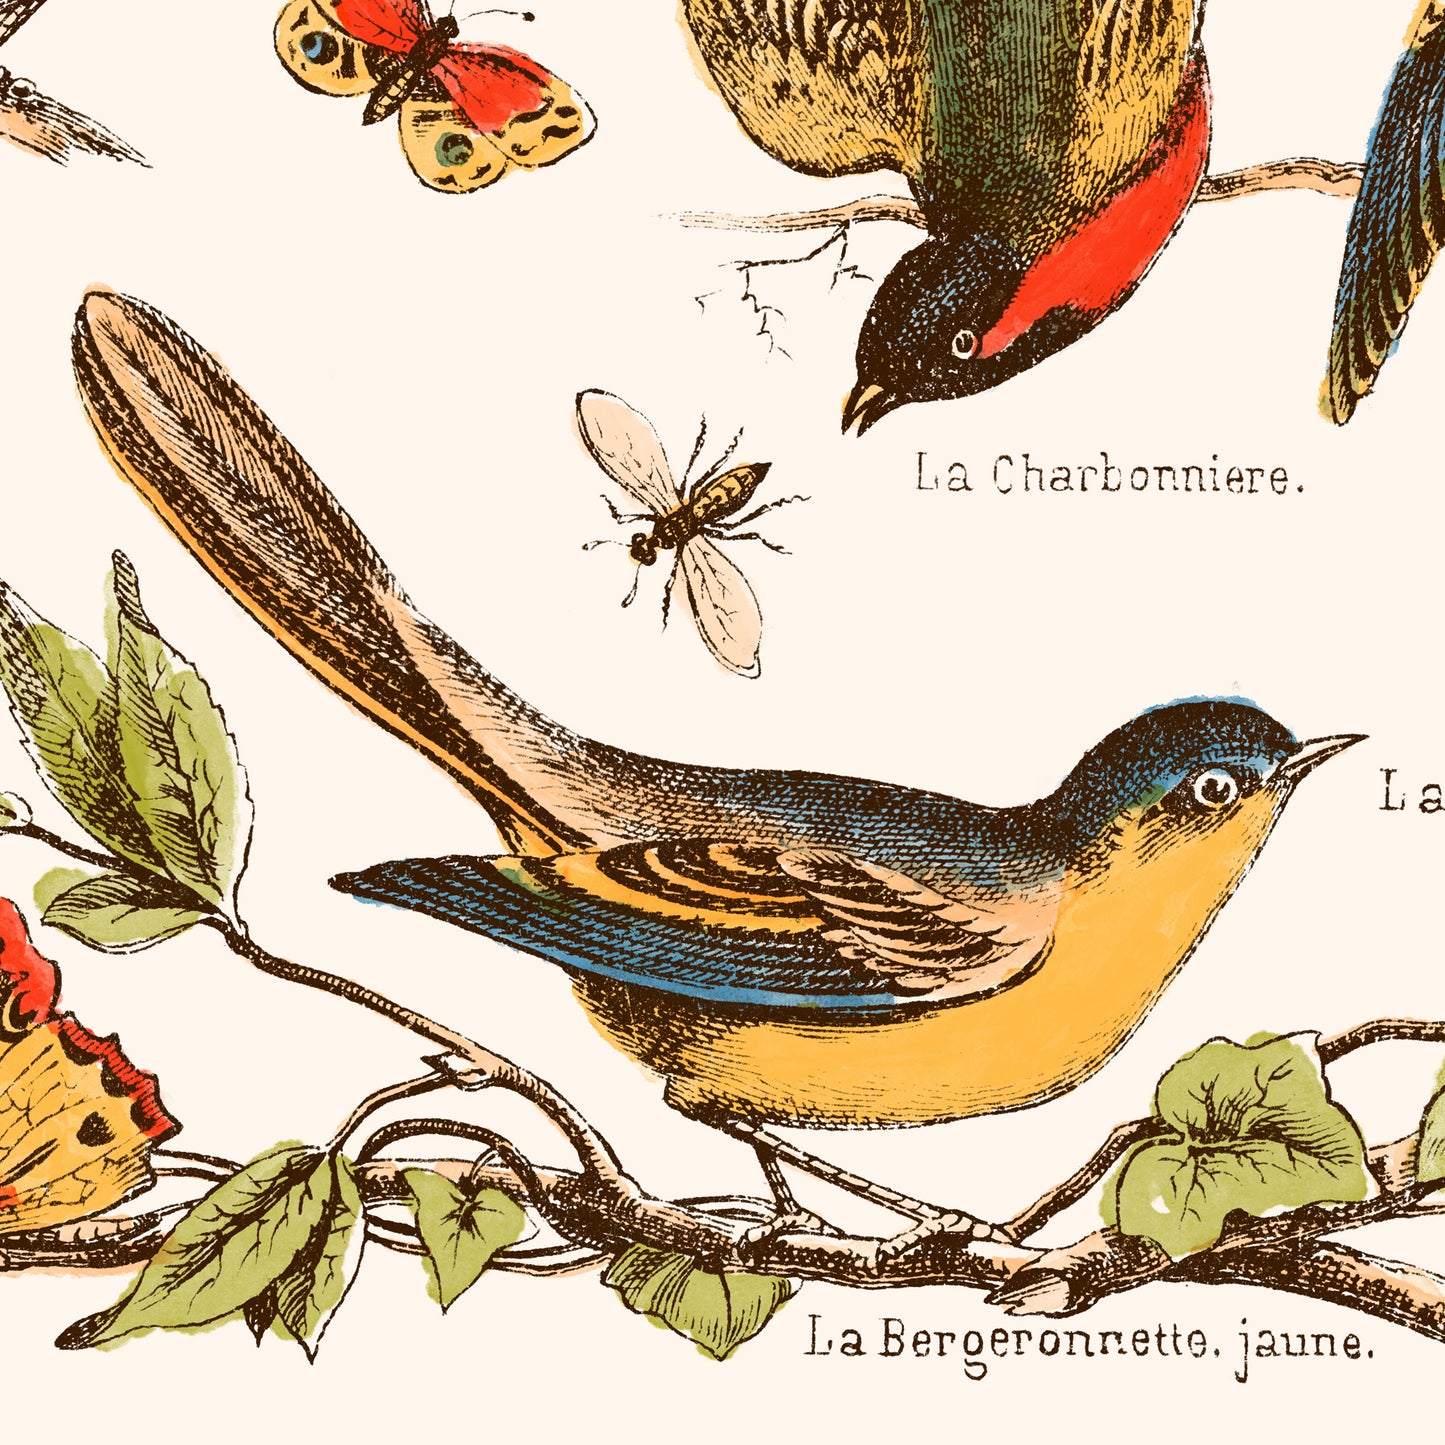 Affiche : Nos Bons Petits Oiseaux